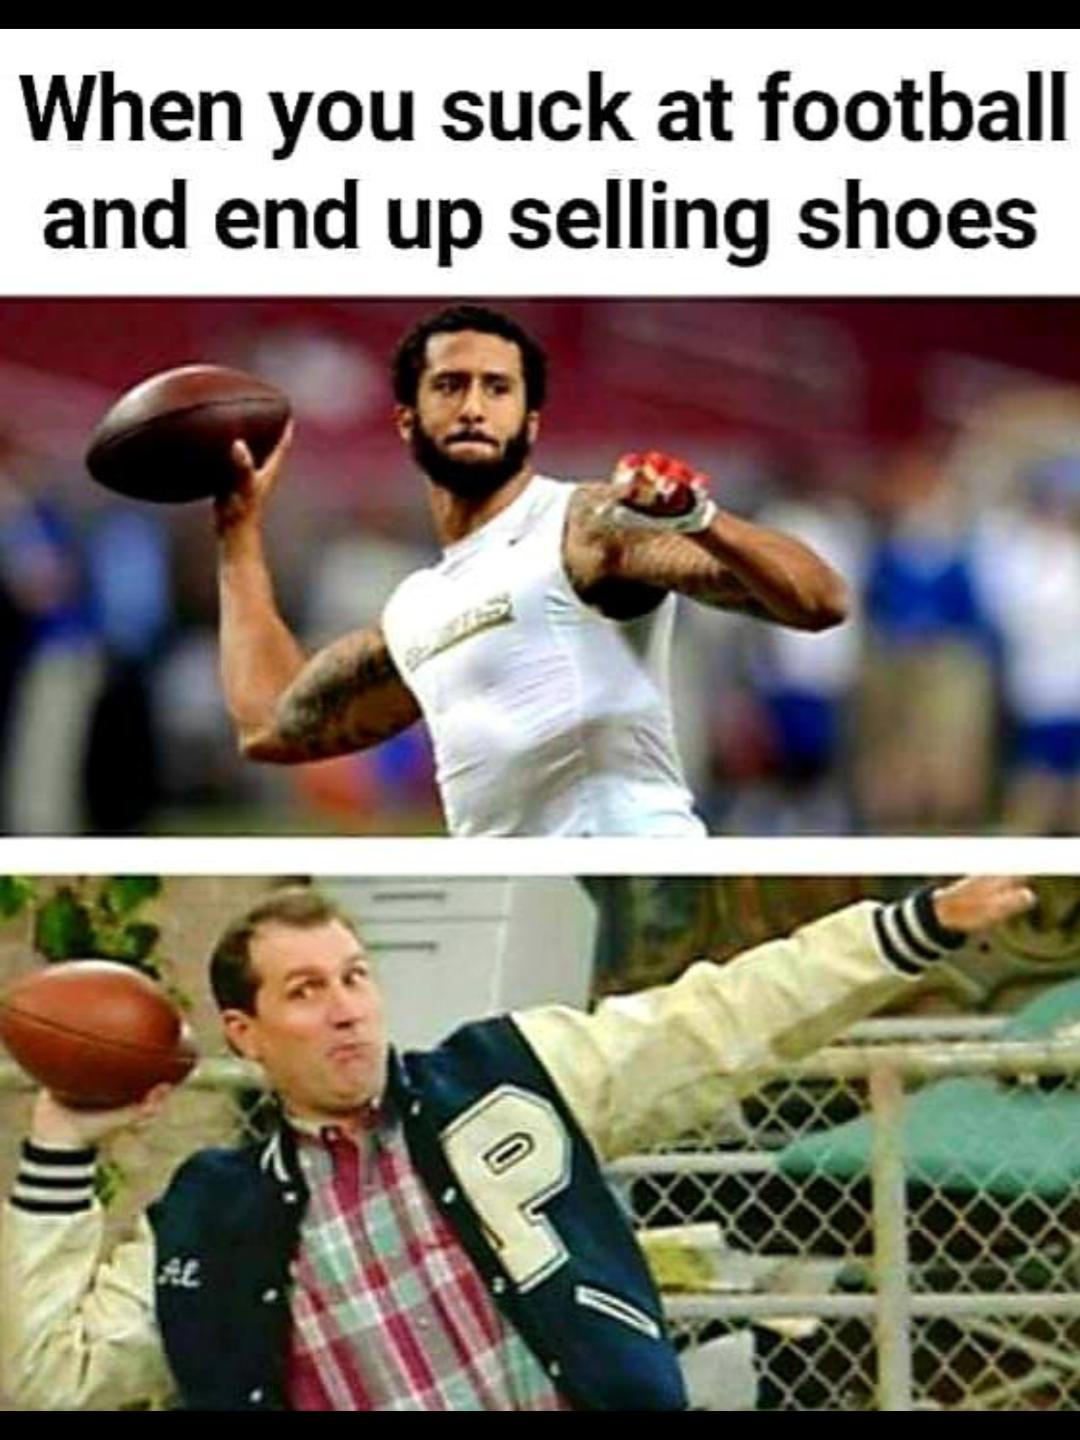 shoe_salesmen.jpg